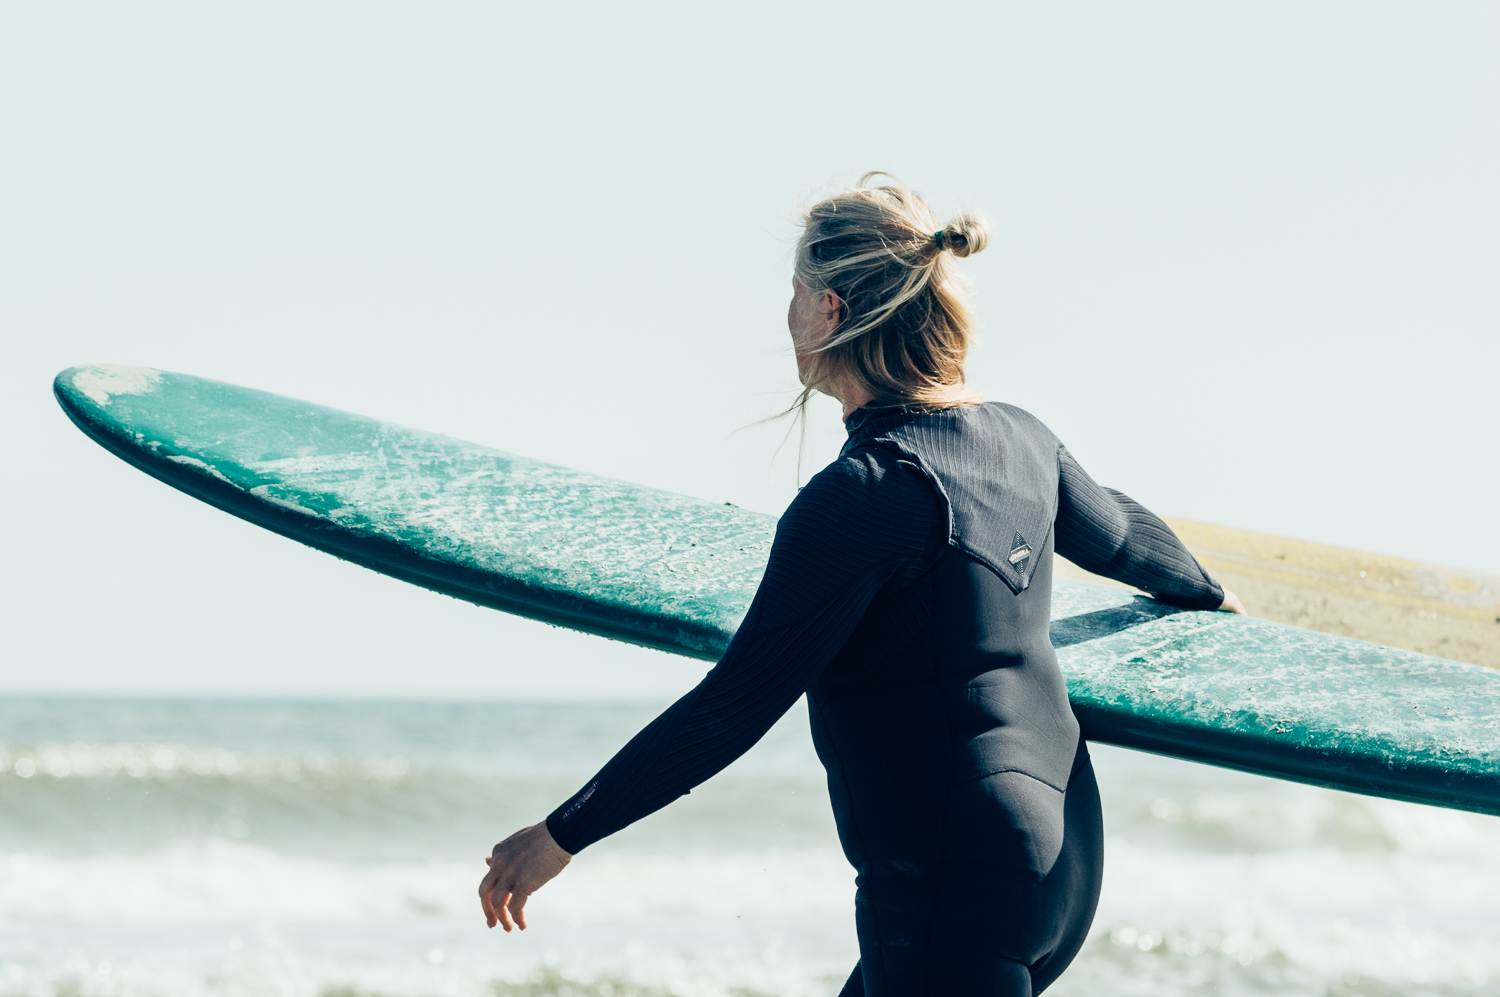 Anne-Marie Kaale loopt met haar surfboard naar het water